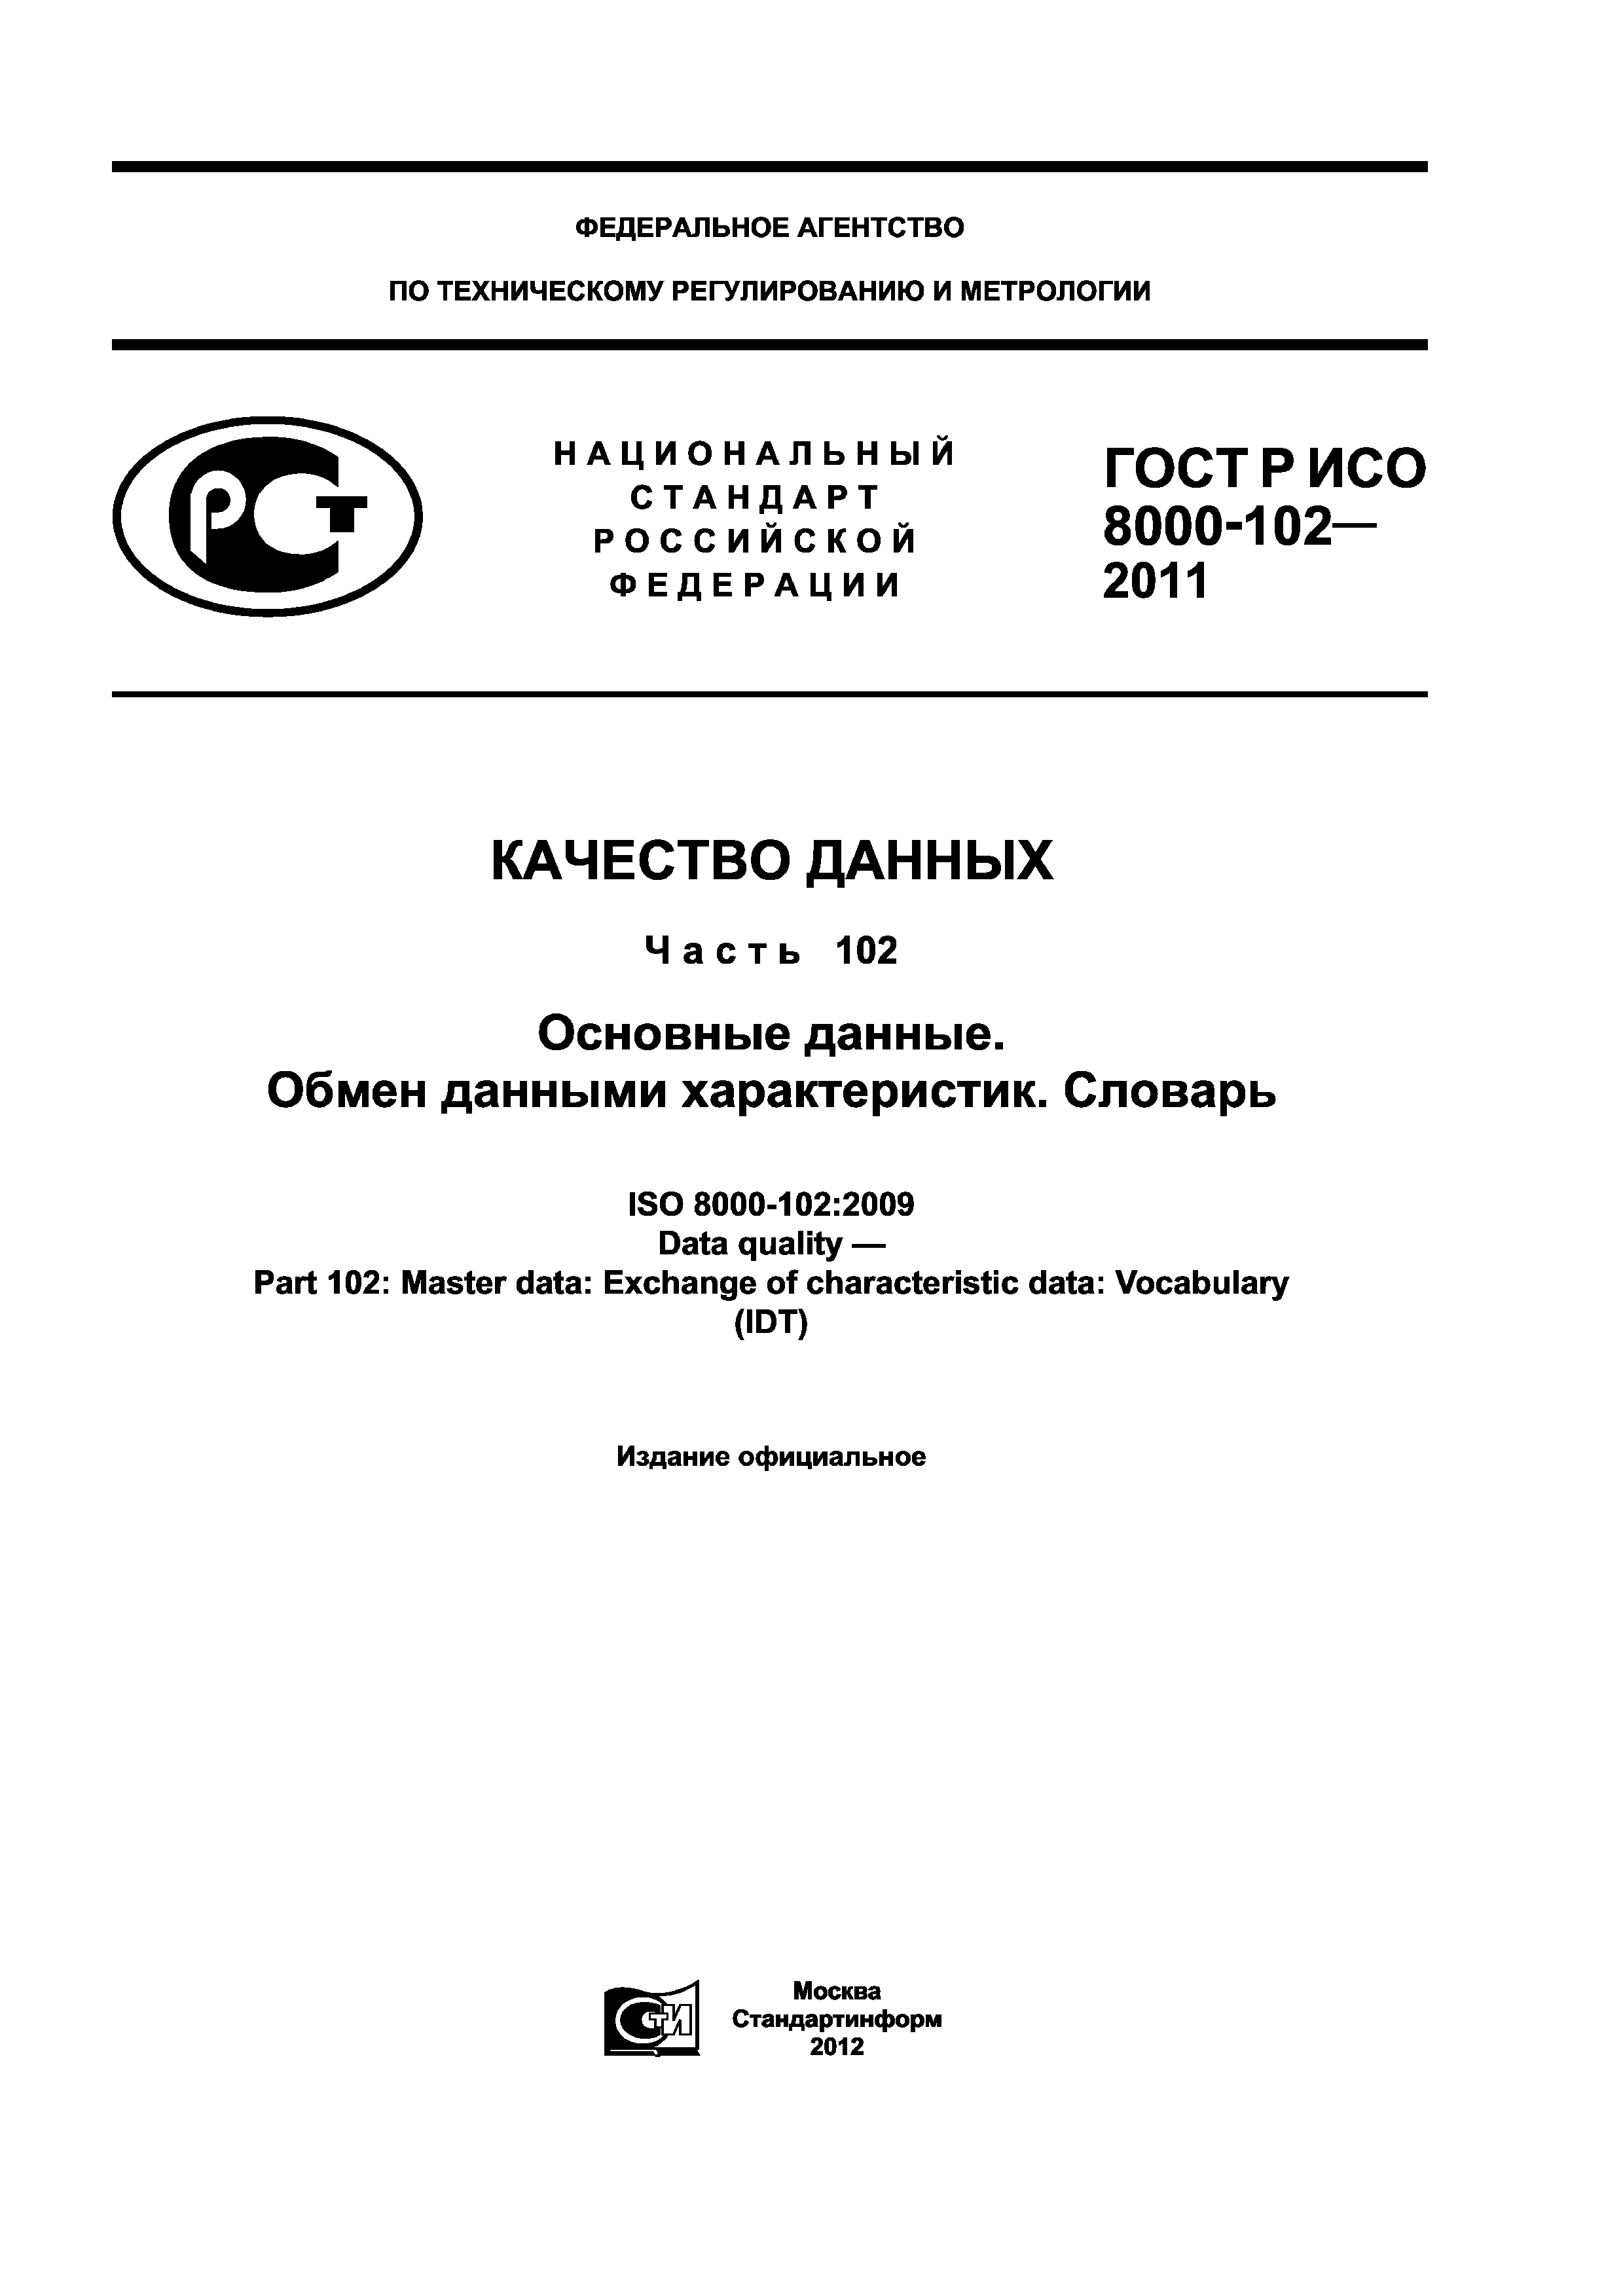 ГОСТ Р ИСО 8000-102-2011